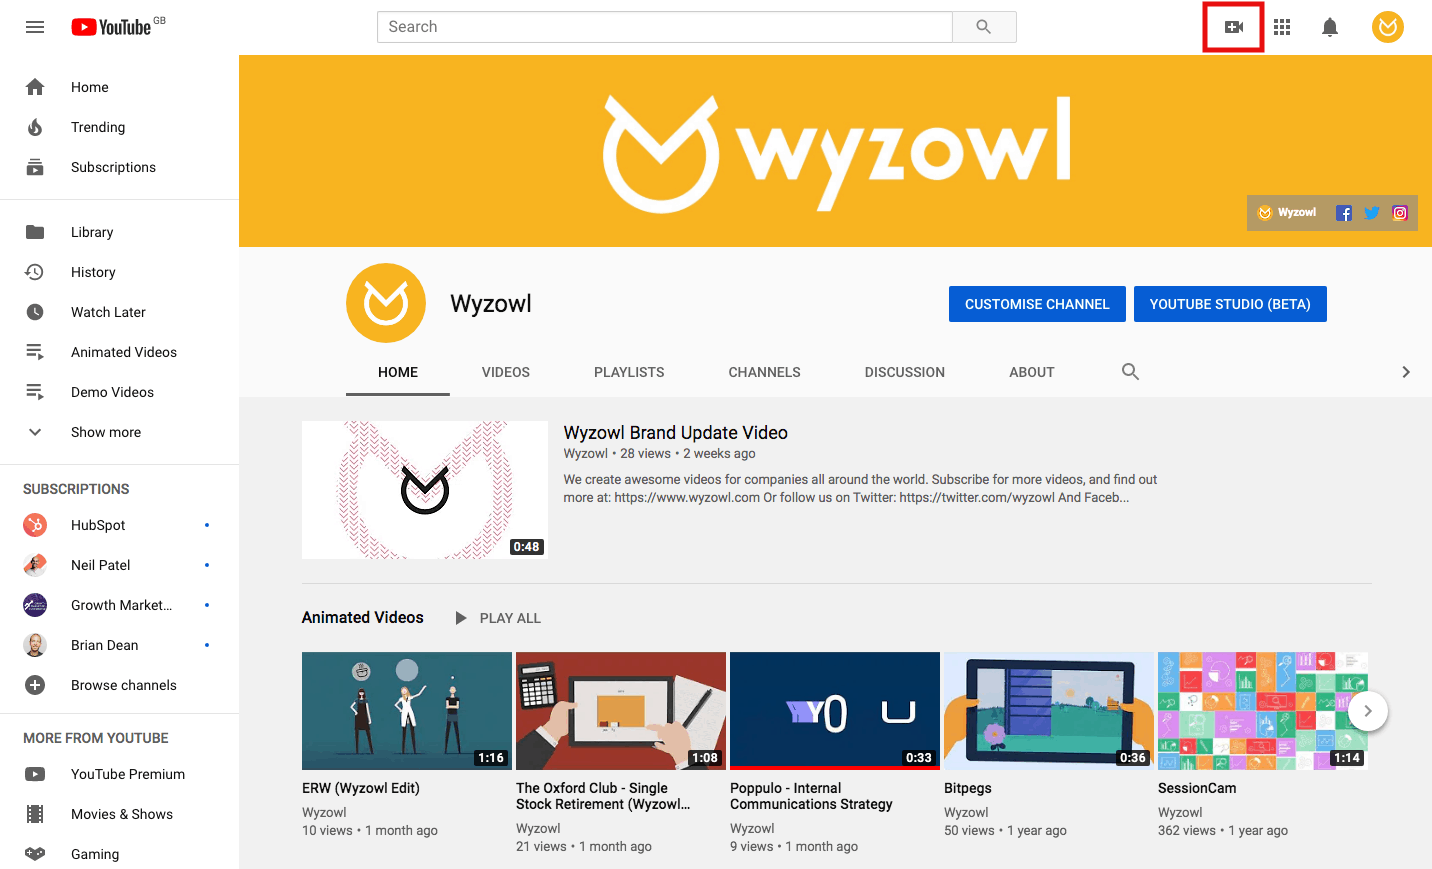 Wyzowl YouTube page